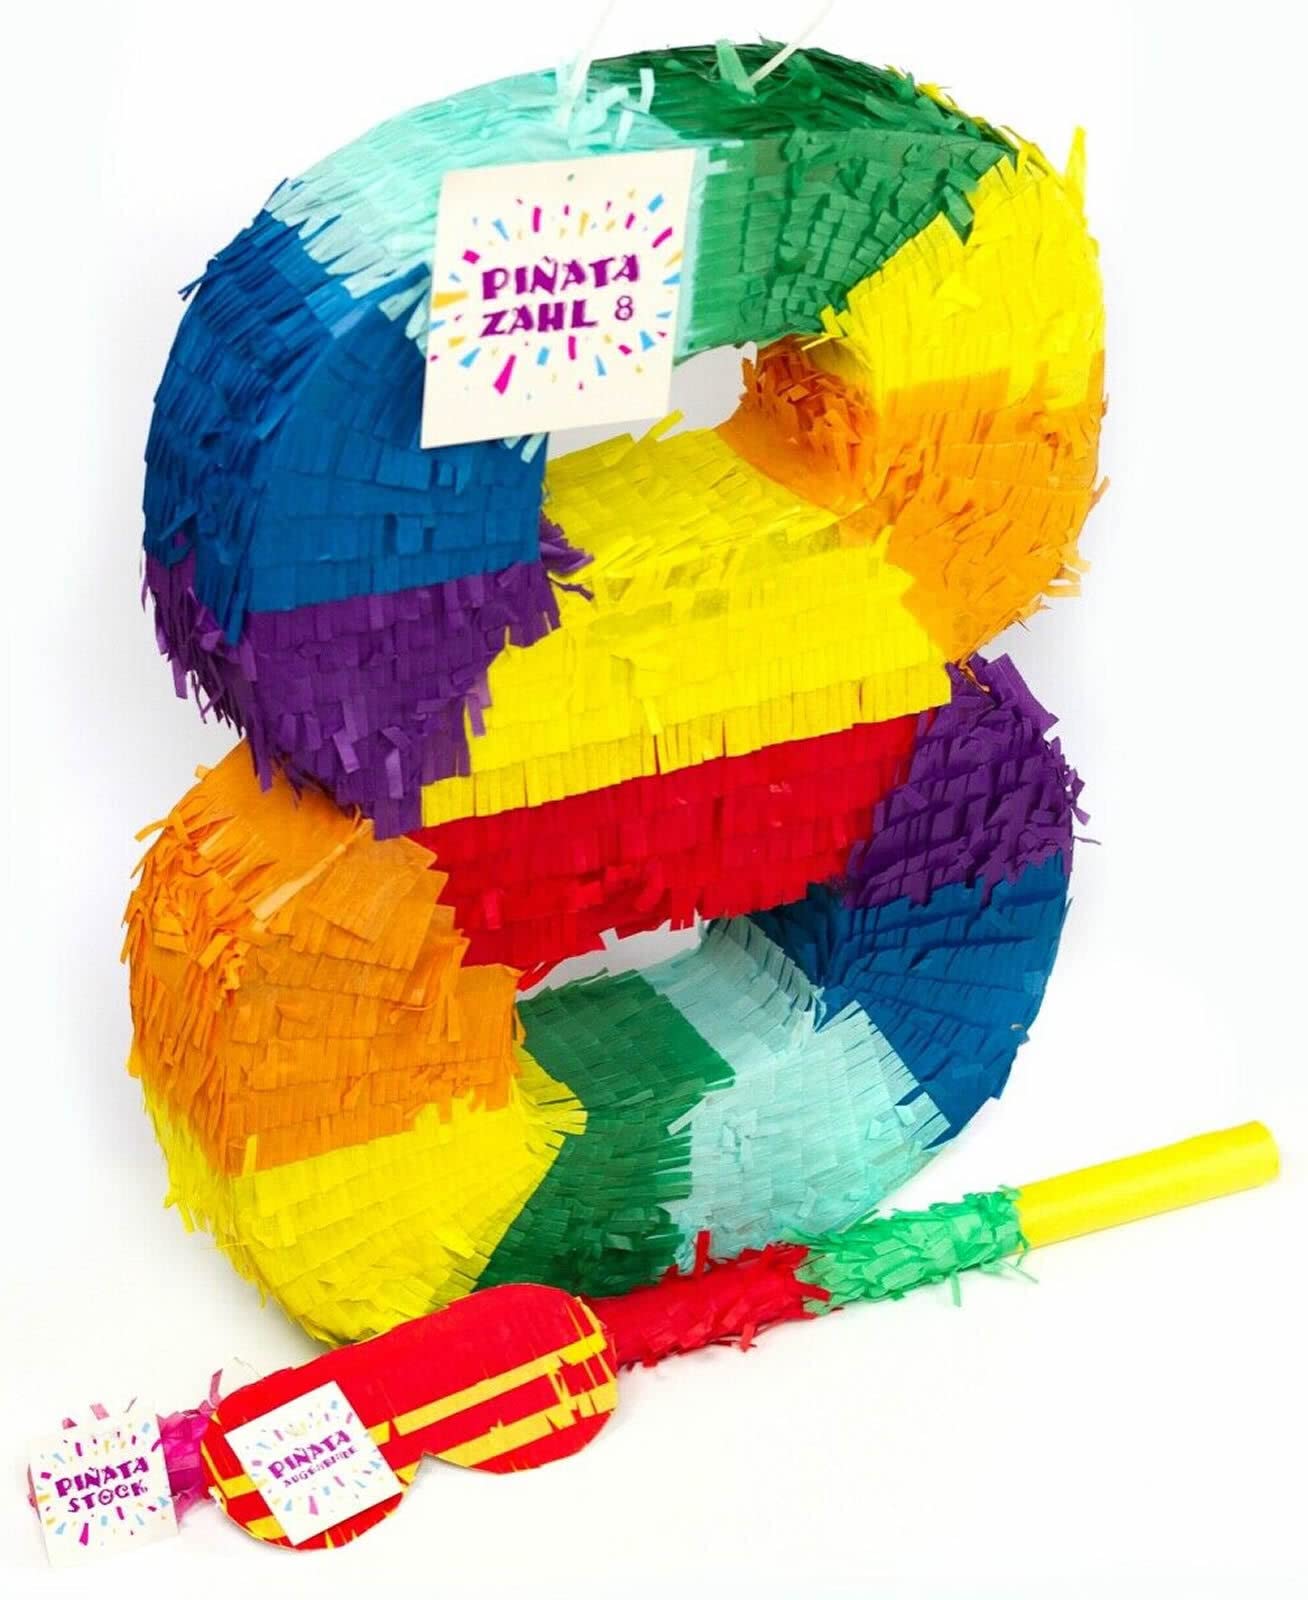 Pinatas Zahl 0 bis 9 | Set: Pinata + Maske + Stock | Tolles Spiel und Deko zum Kindergeburtstag | Zahlen Piñata Kinder Geburtstag Party Partydeko, Edition: 8. Geburtstag